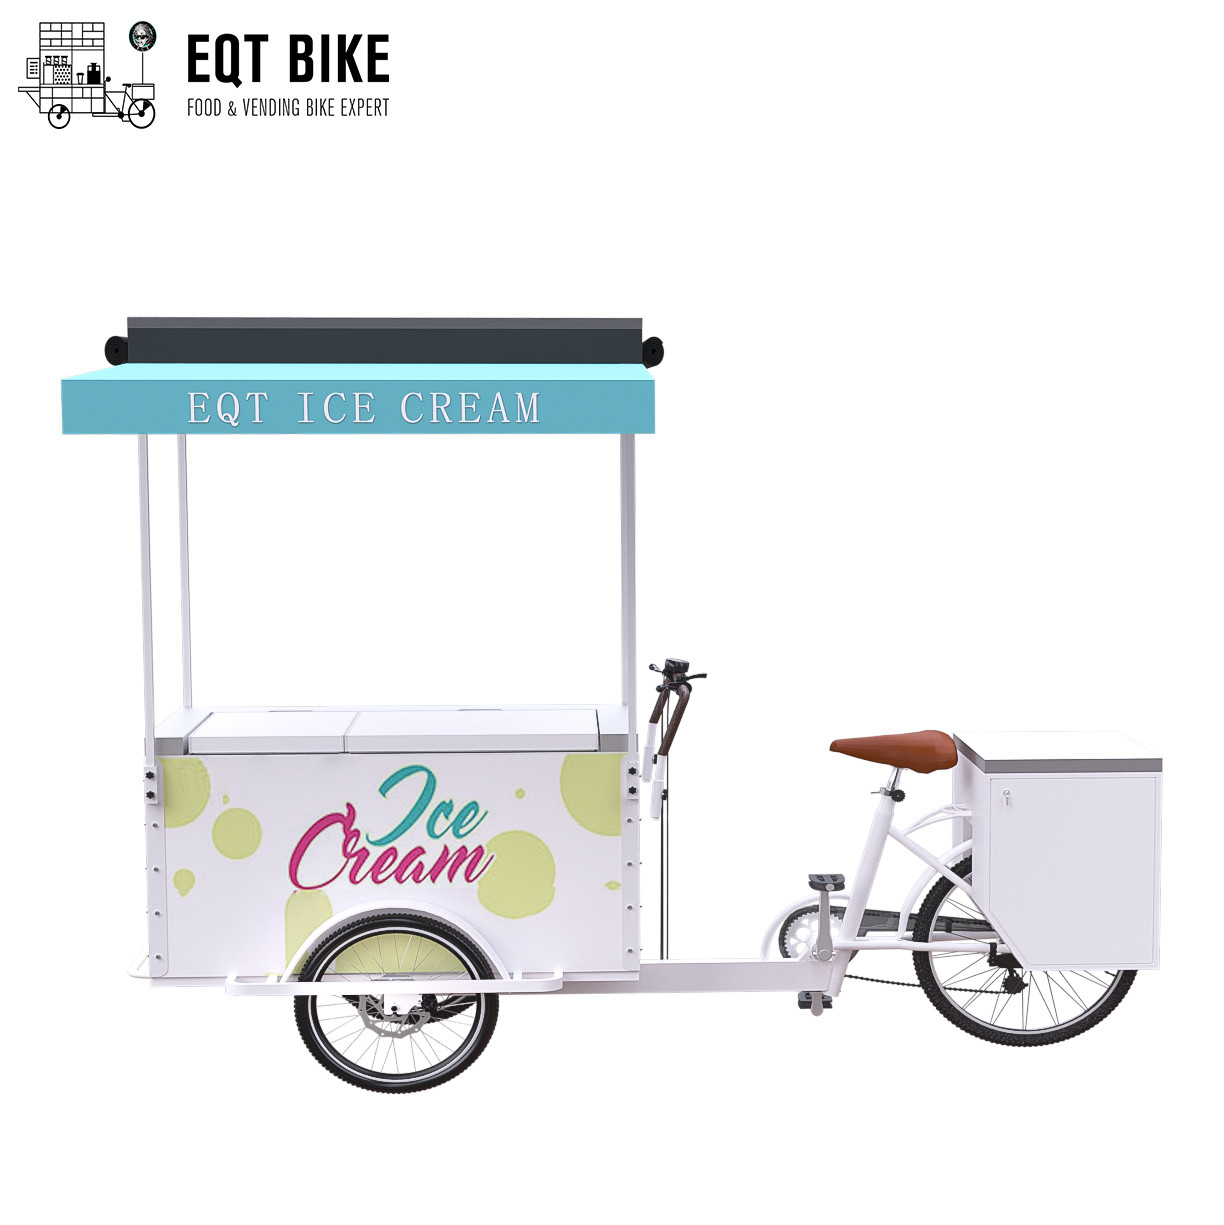 Carga do triciclo da bicicleta do gelado de EQT para a bicicleta elétrica da bicicleta do congelador da venda do negócio da rua para bebidas frias